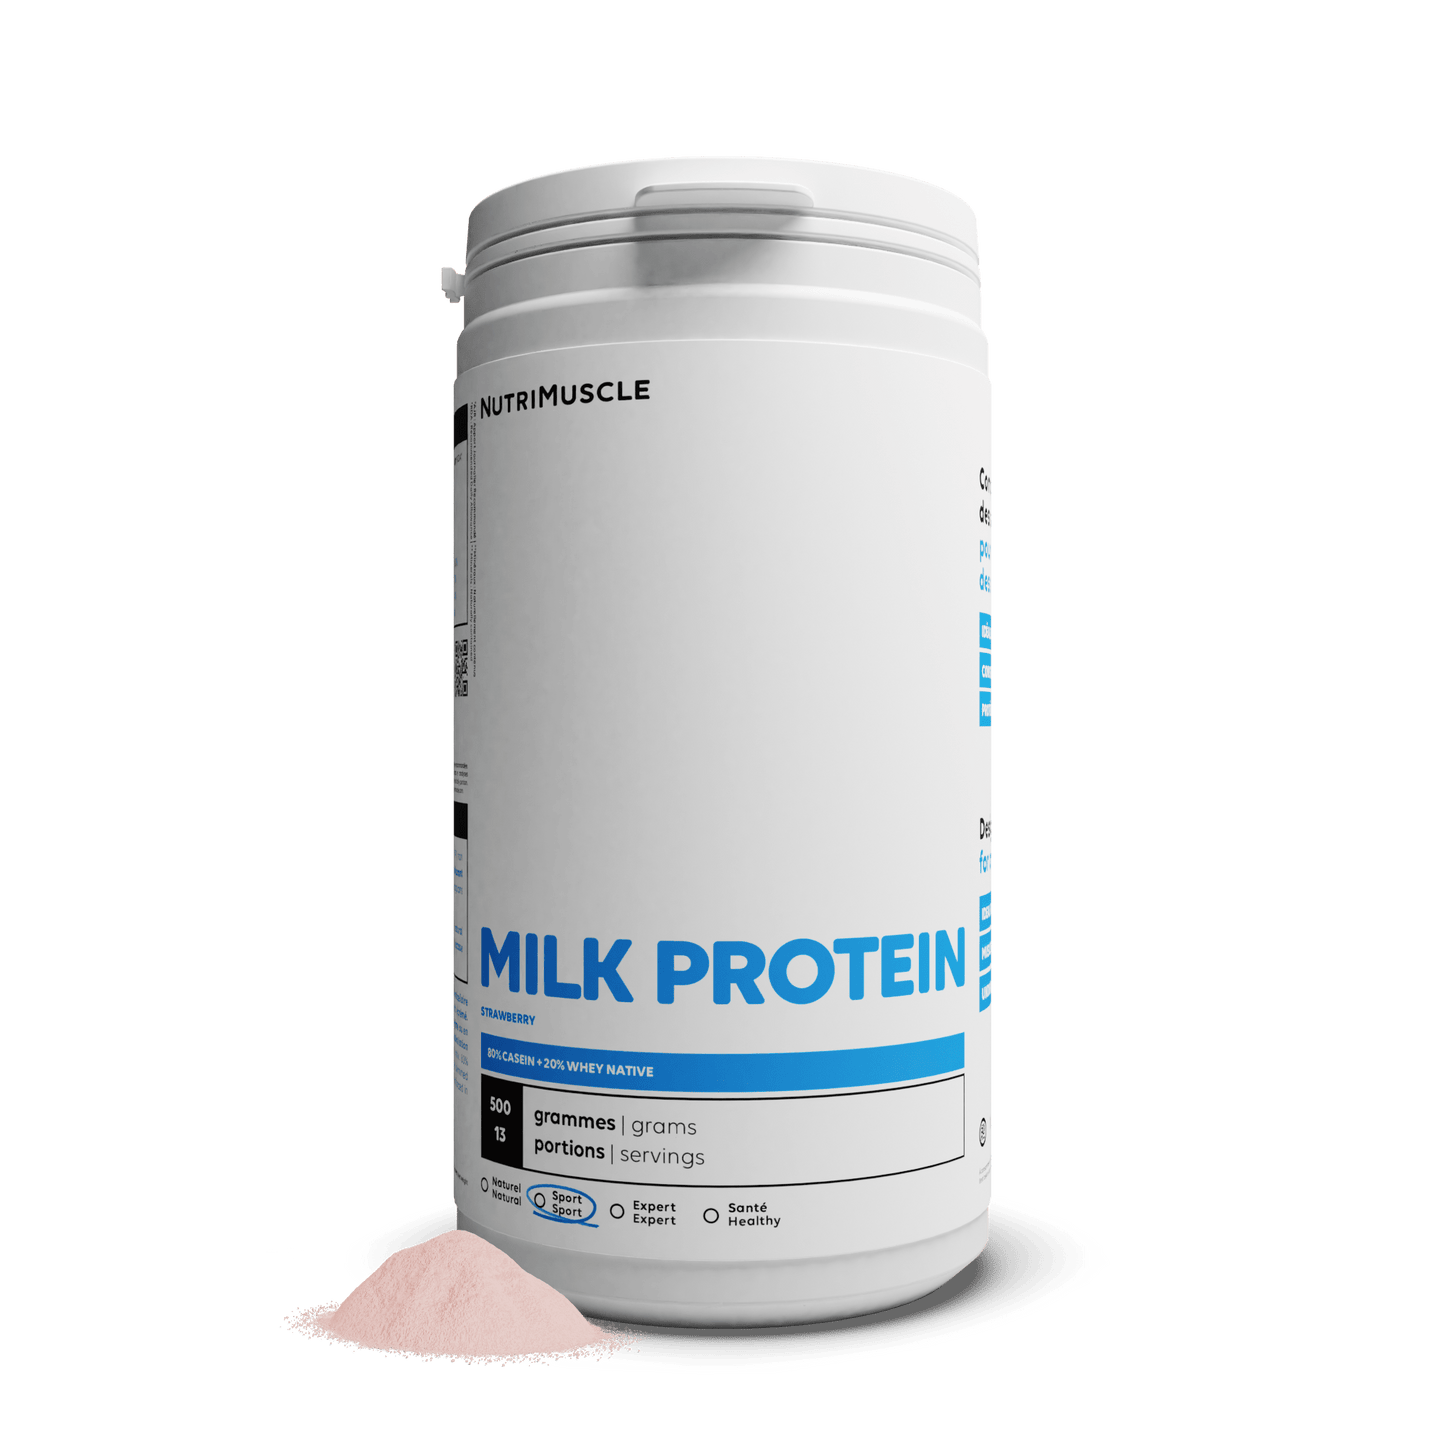 Nutrimuscle Protéines Fraise / 500 g Protéines Totales